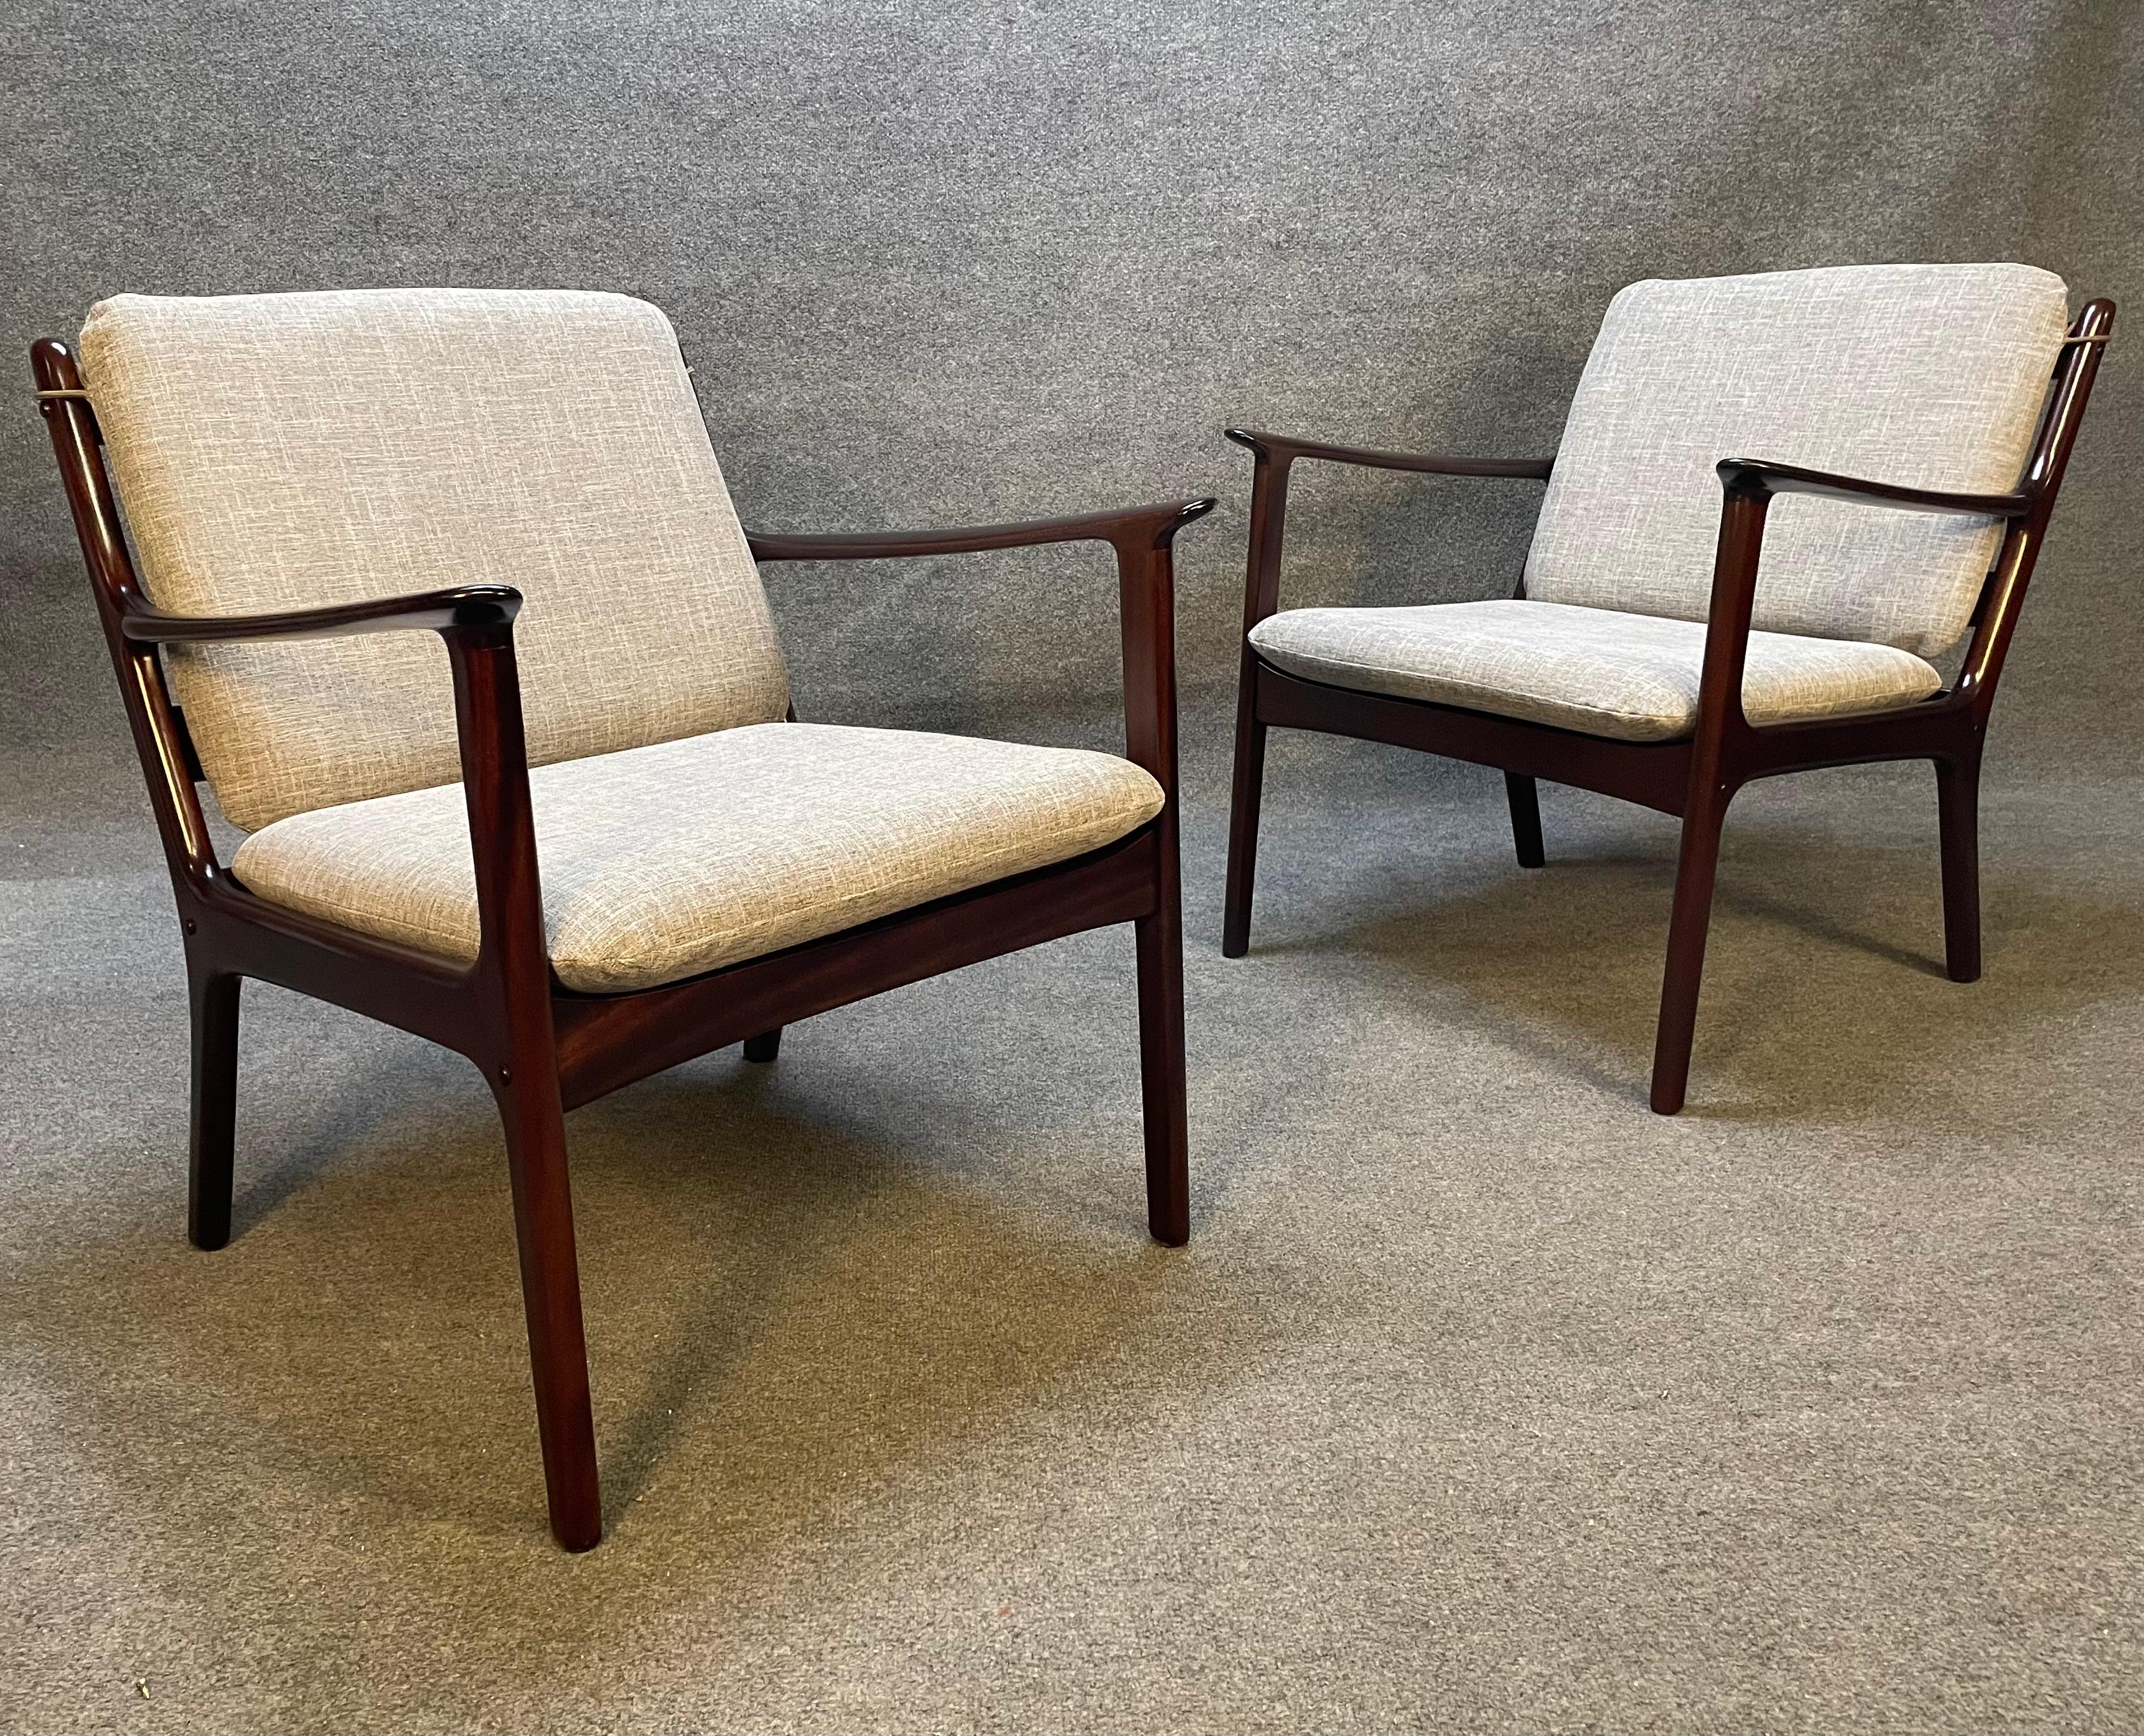 Hier ist eine schöne Reihe von zwei skandinavischen modernen Sessel Modell PJ112 in Mahagoni von Professor Ole Wanscher entworfen und von Poul Jeppesen in Dänemark in den 1960er Jahren hergestellt. Diese bequemen Stühle, die vor kurzem aus